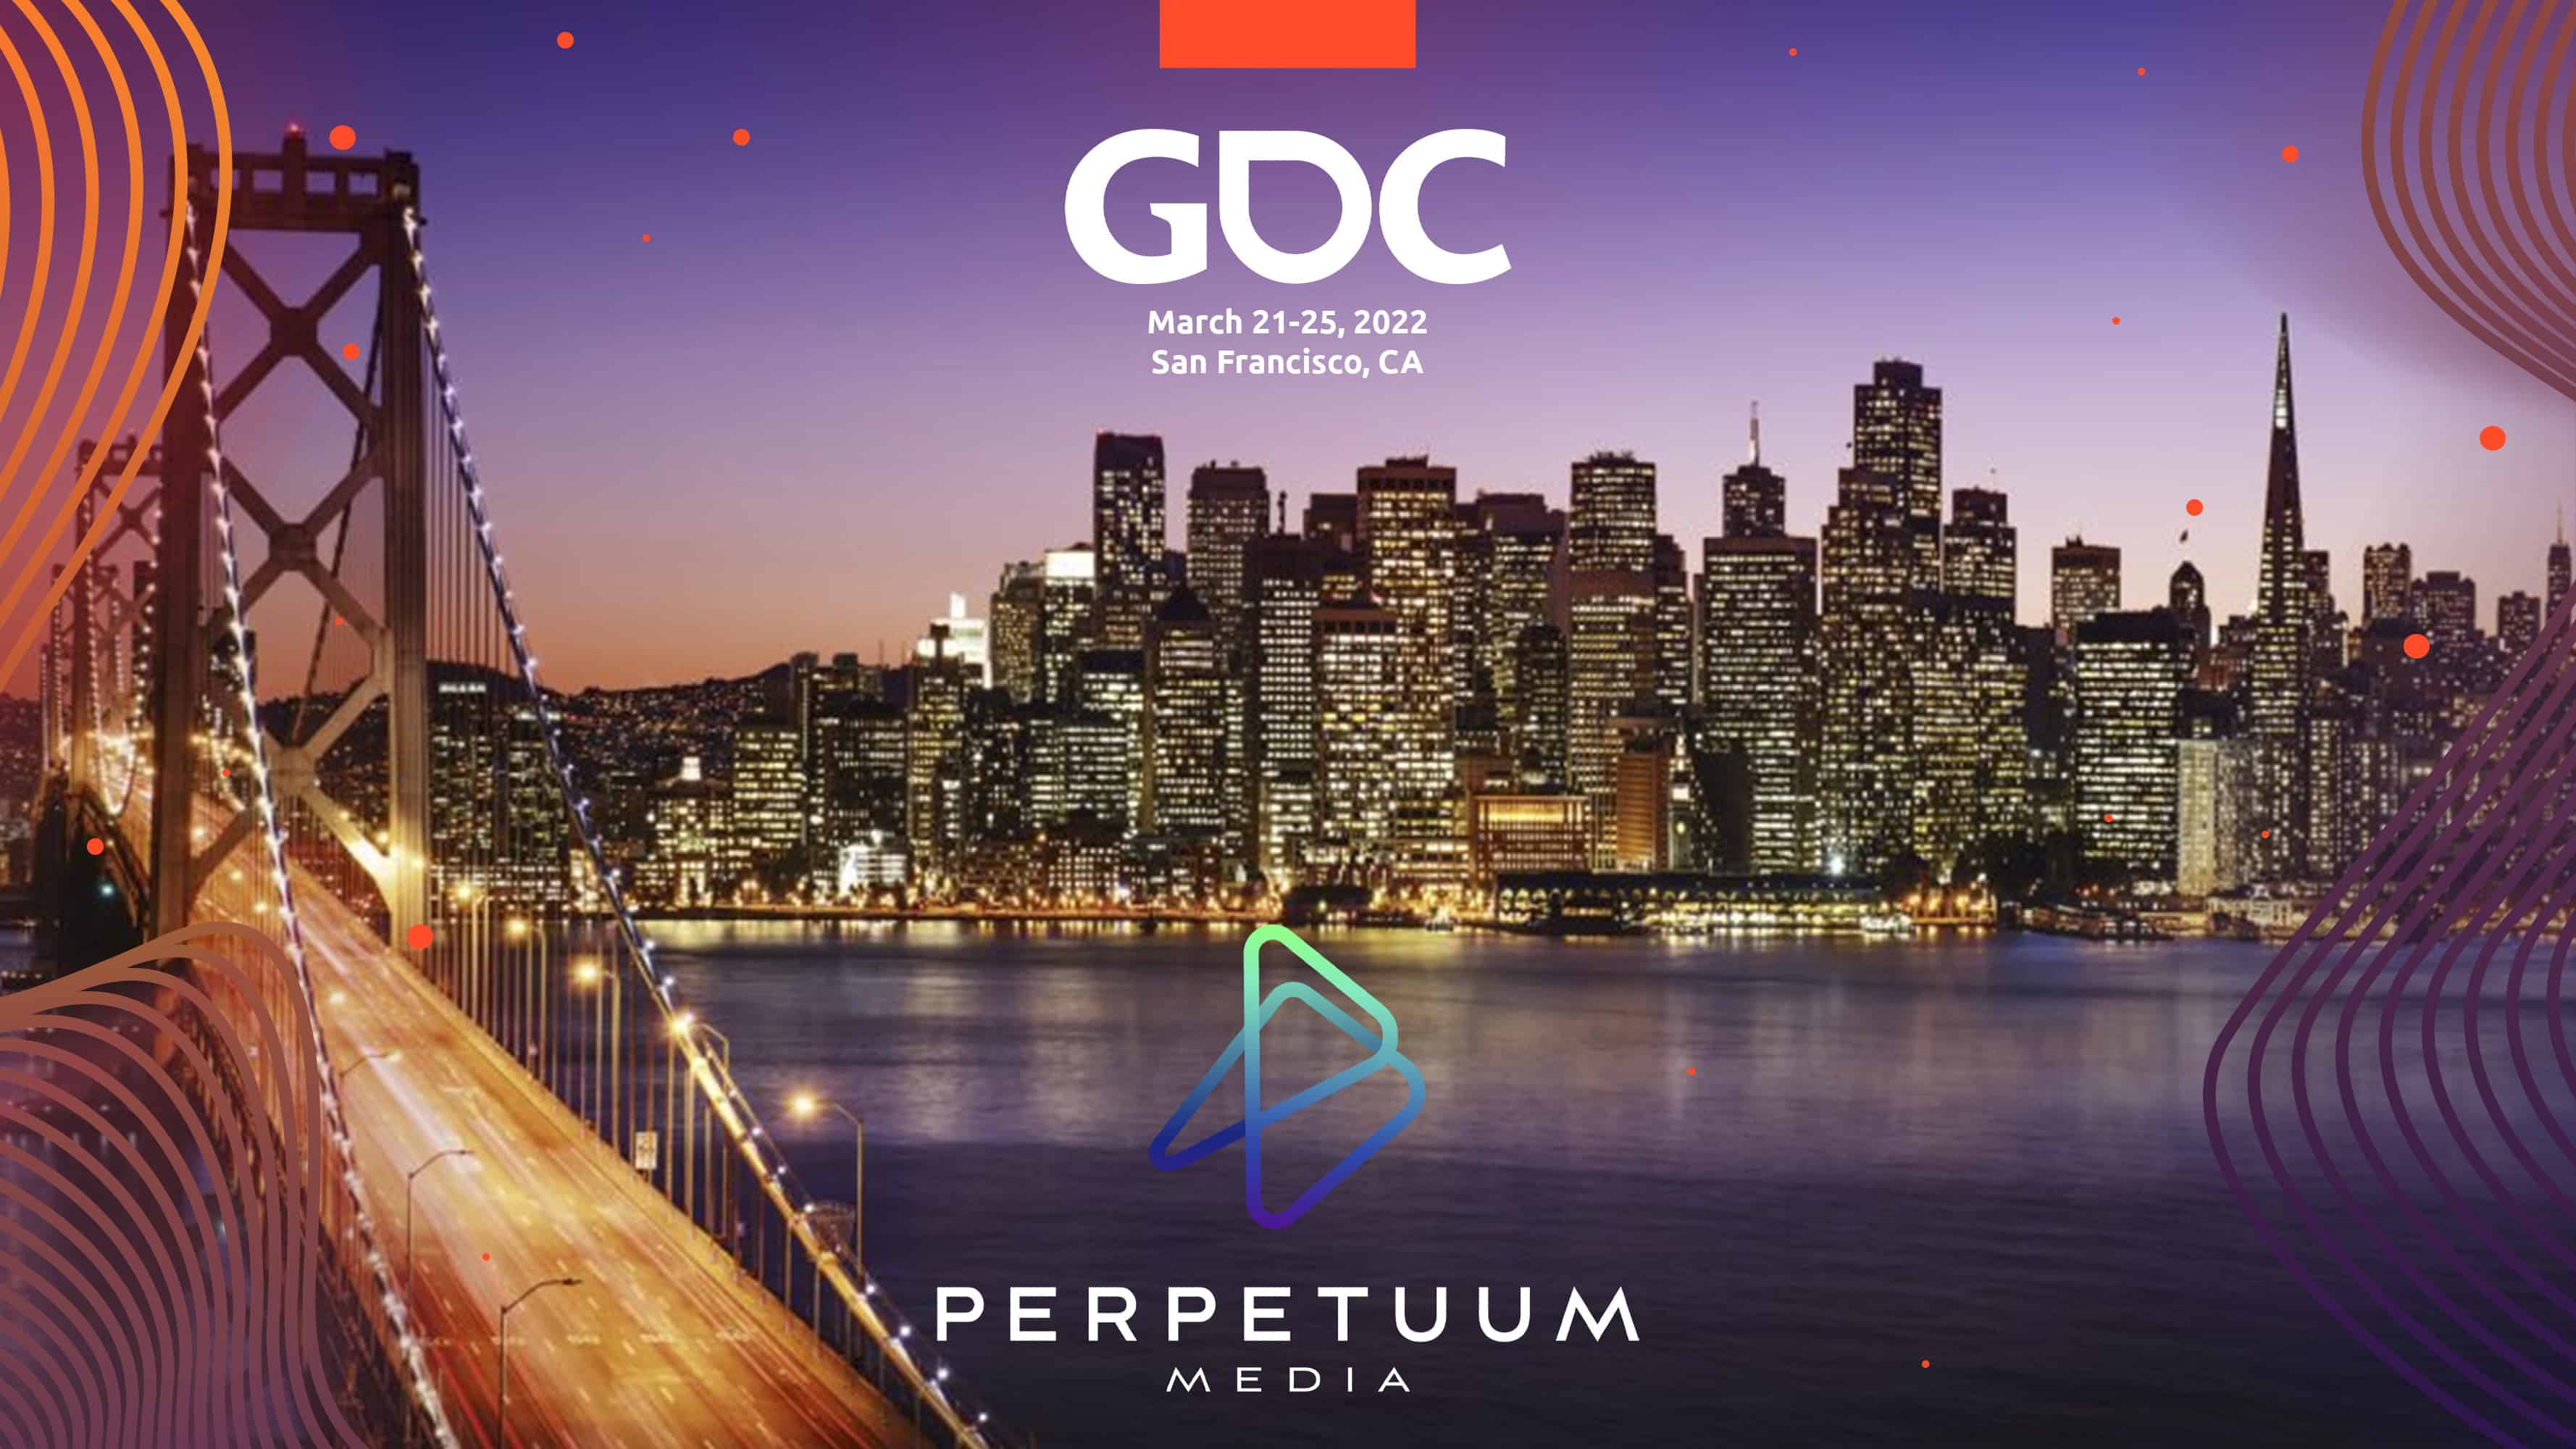 Meet us at GDC San Francisco 2022 Perpetuum Media